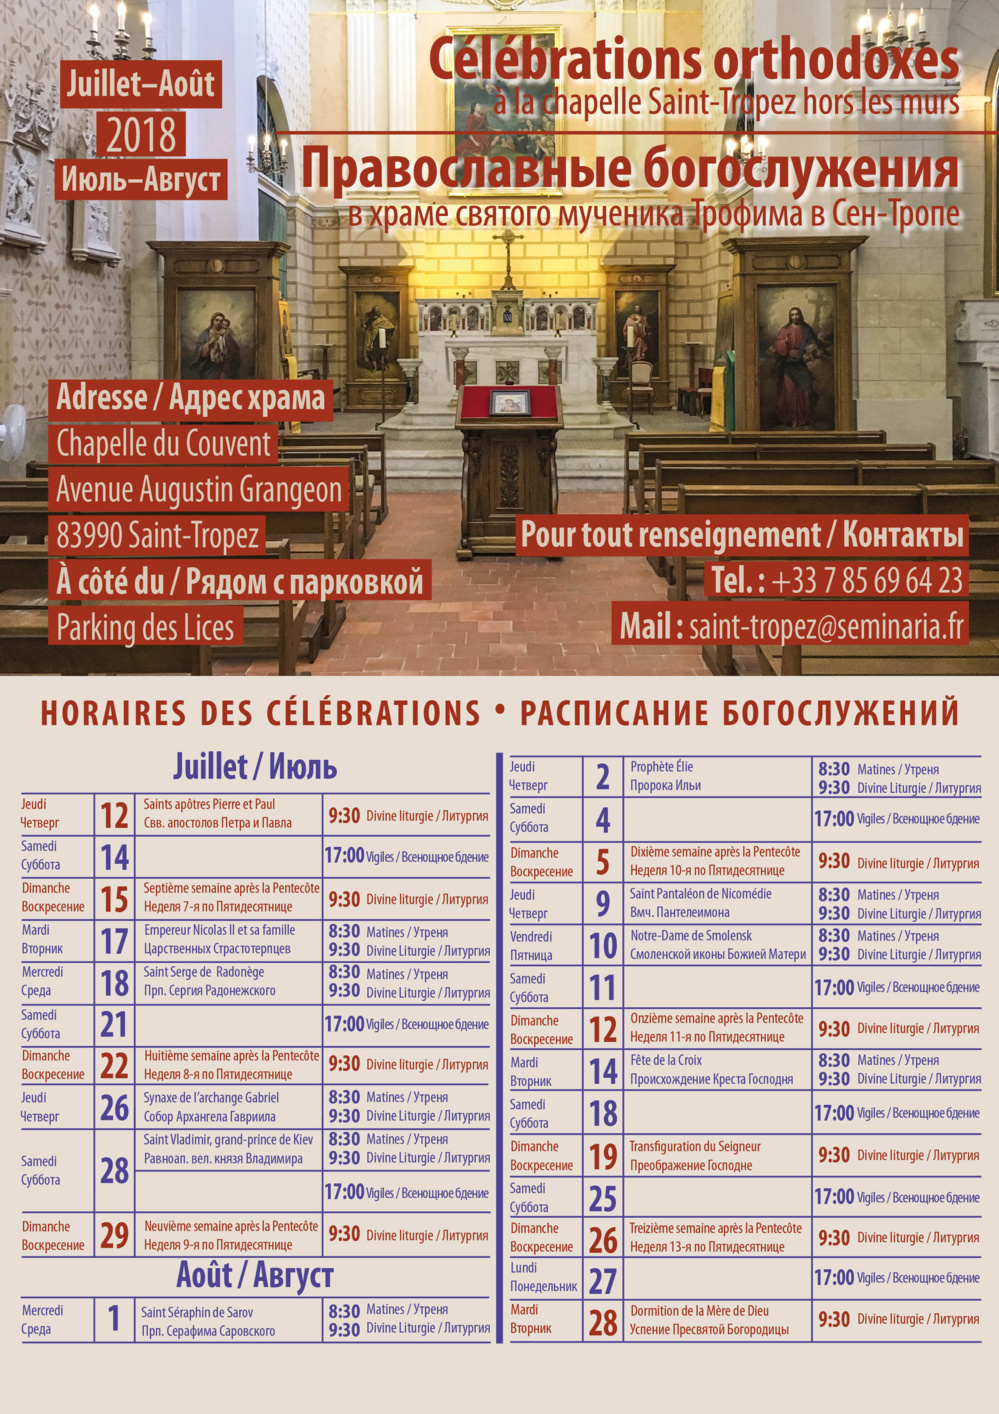 Horaires des célébrations orthodoxes à Saint-Tropez en été 2018